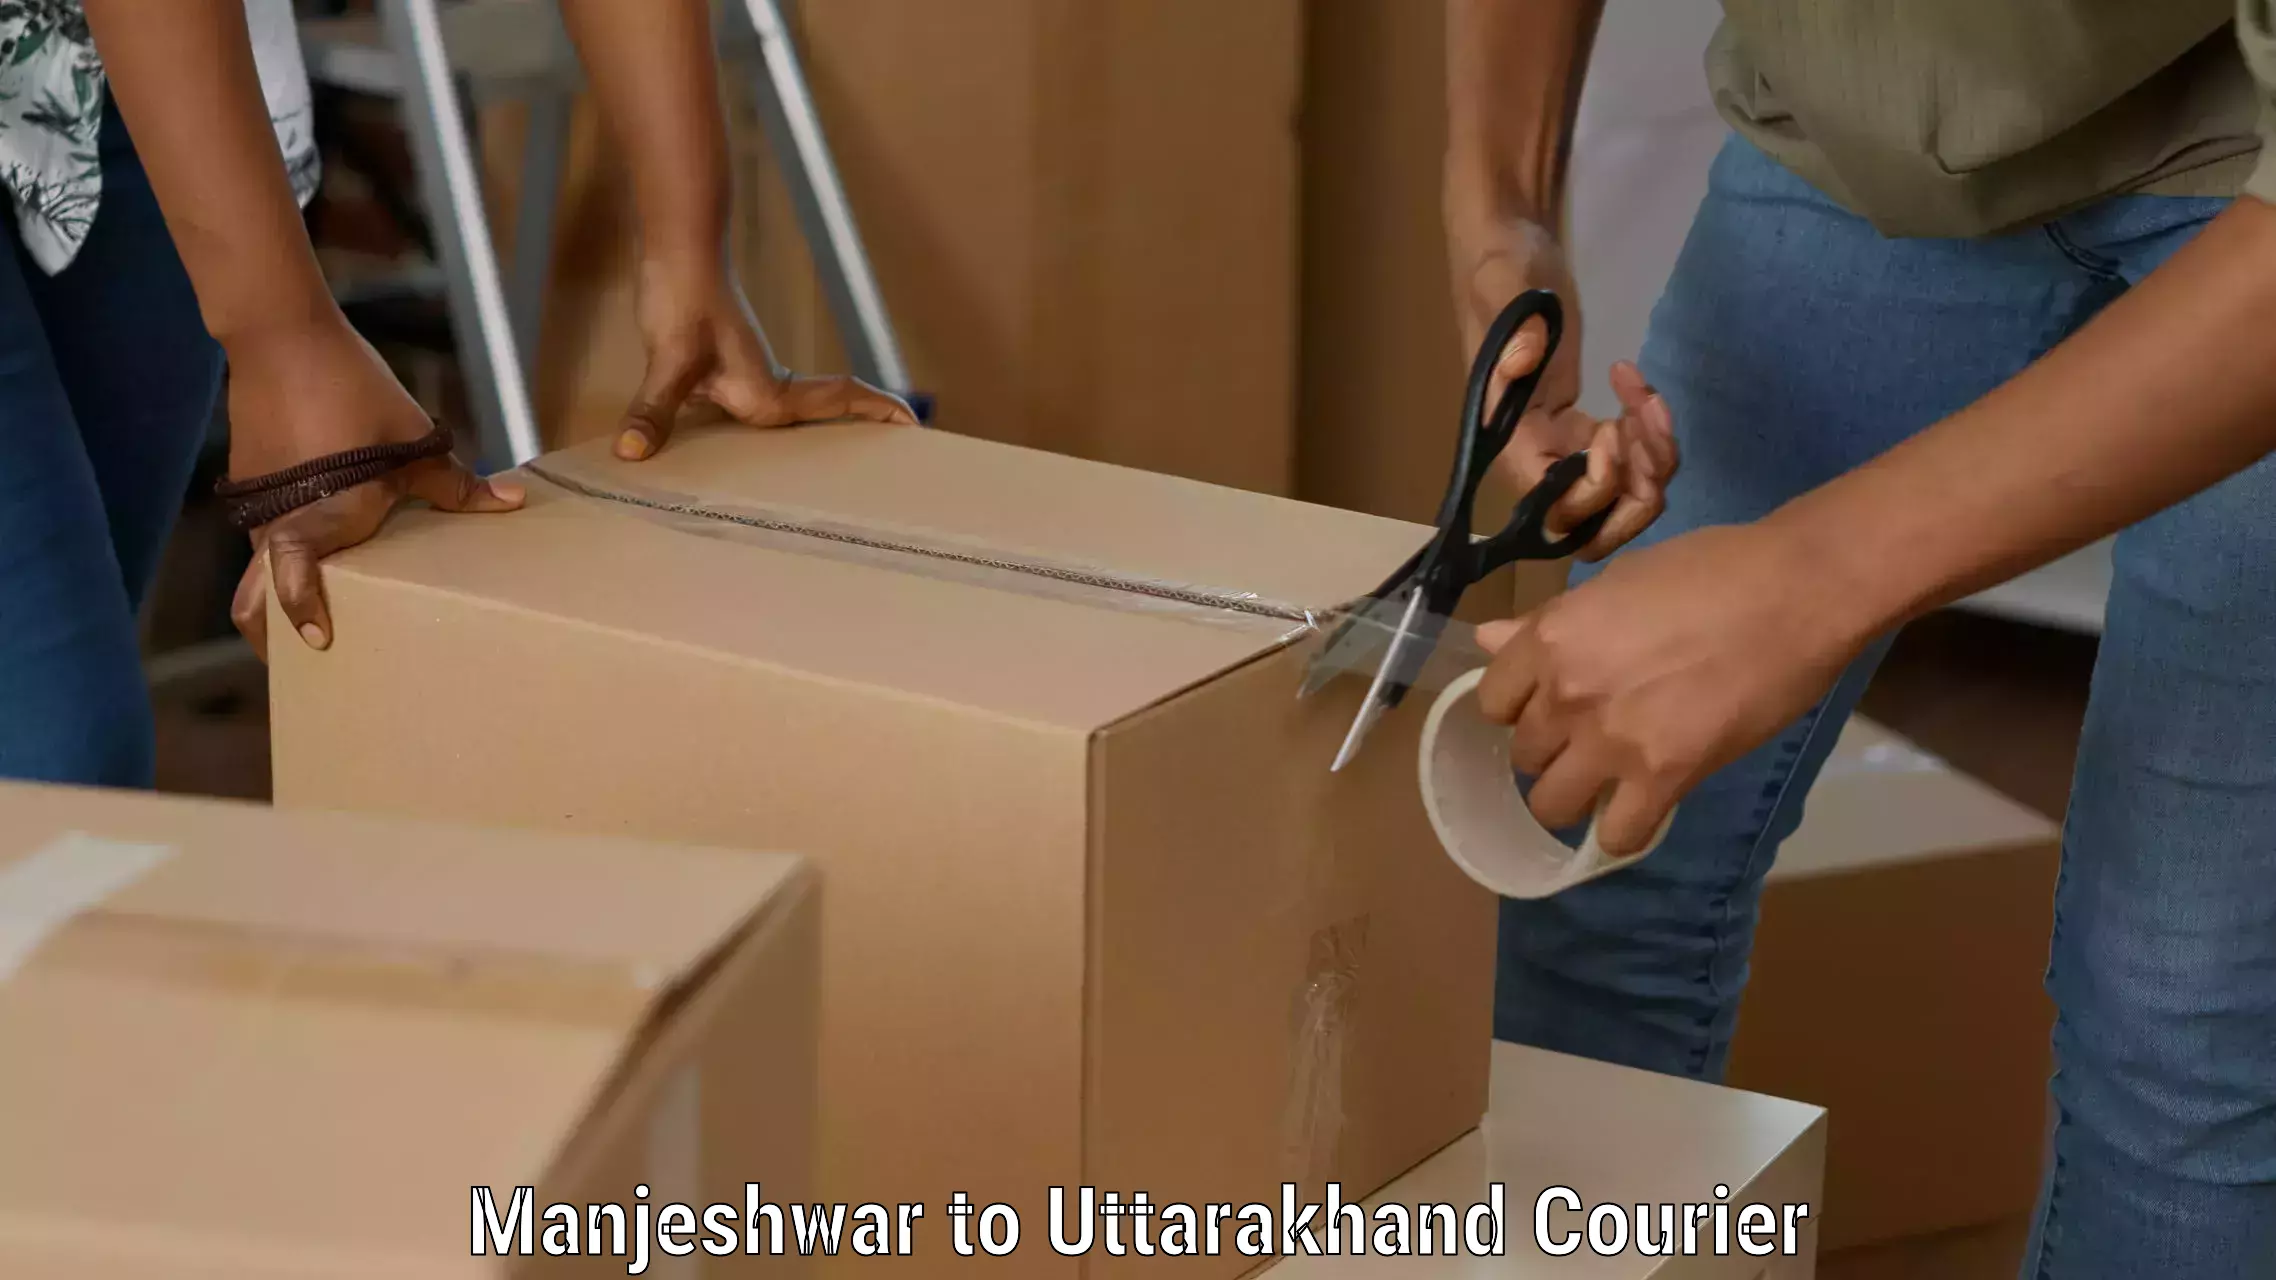 Customer-focused courier Manjeshwar to Pithoragarh